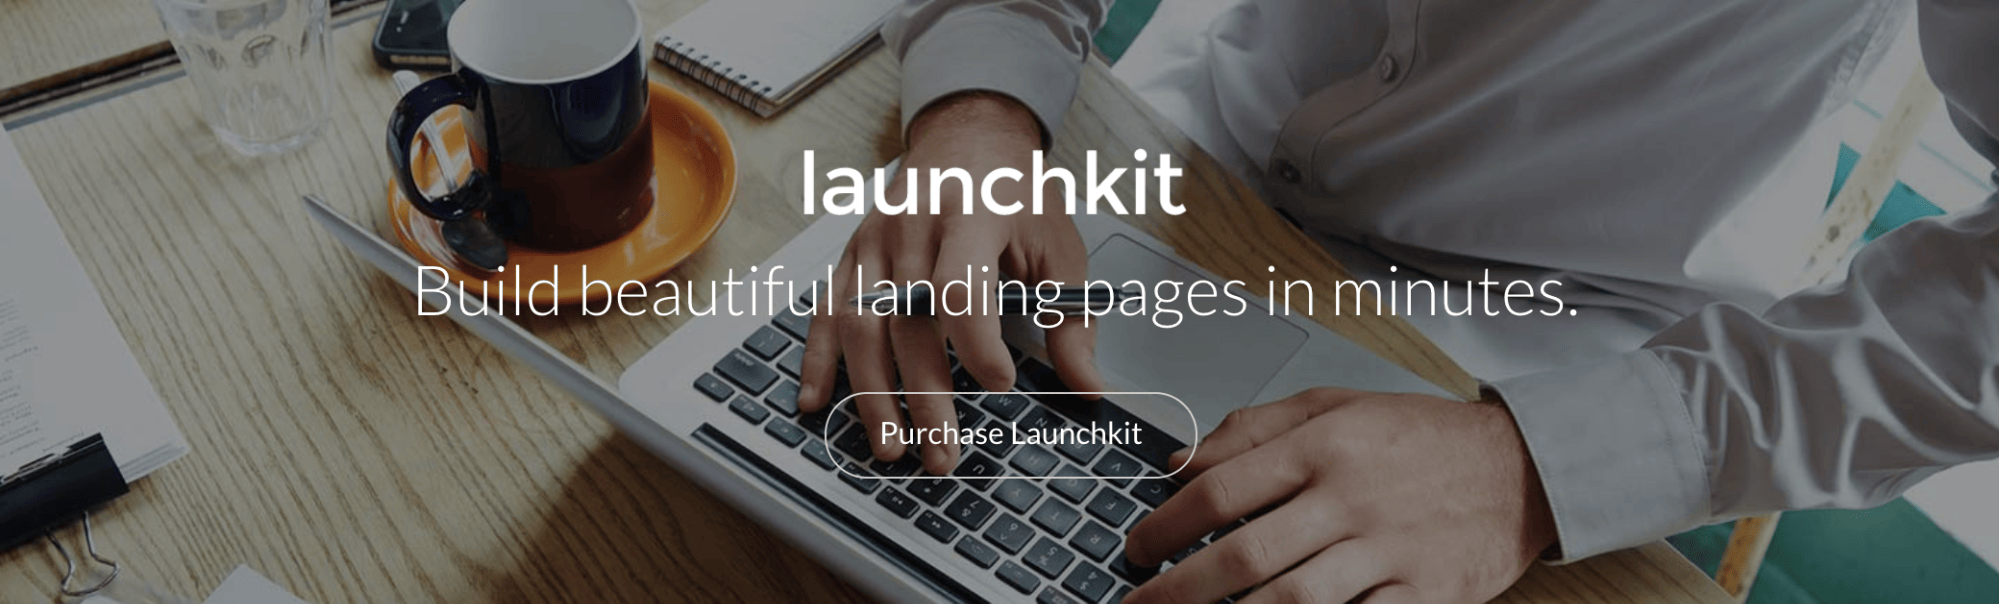 Launchkit